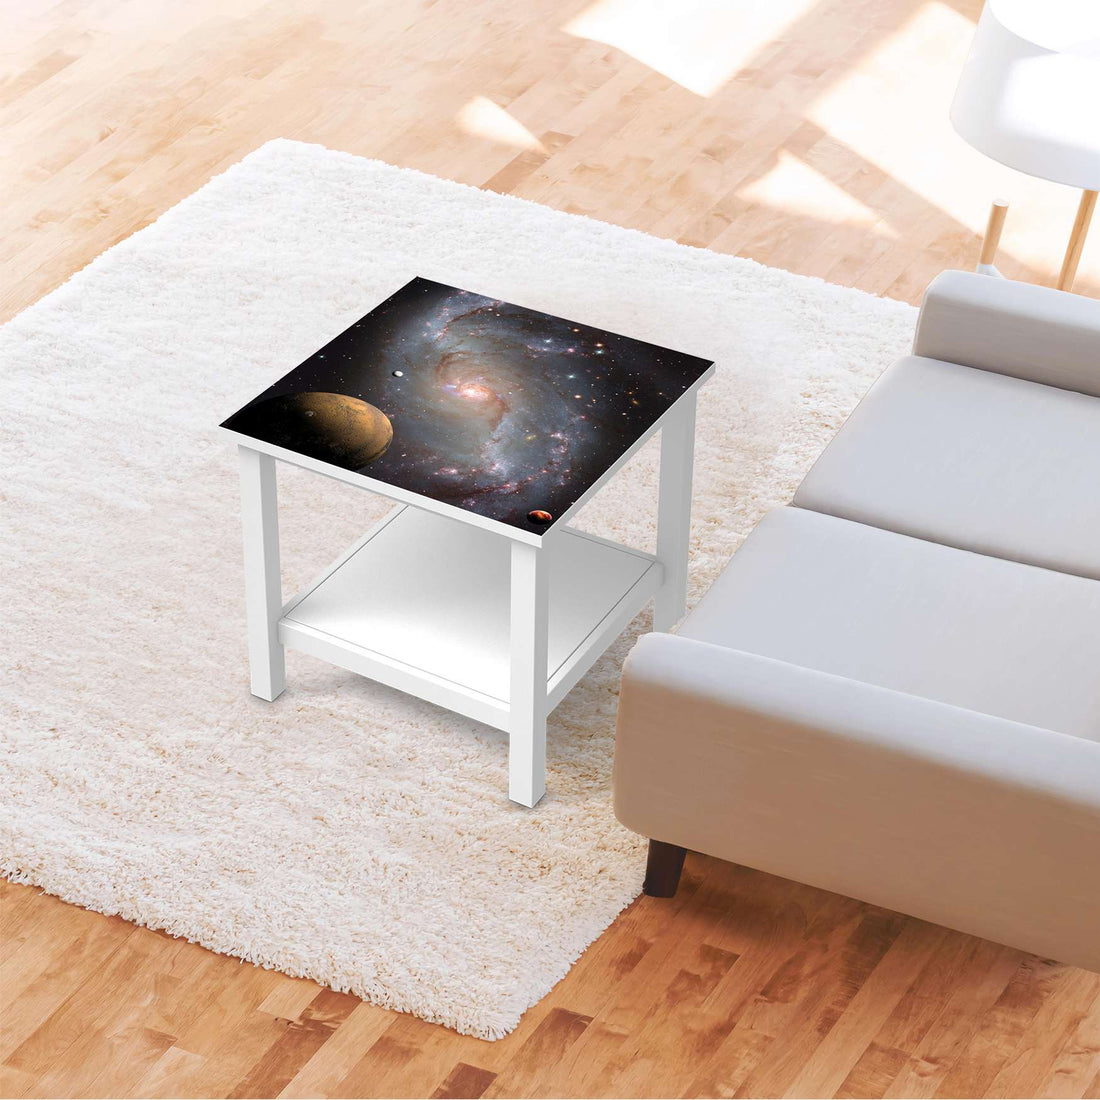 Möbel Klebefolie Milky Way - IKEA Hemnes Beistelltisch 55x55 cm - Wohnzimmer